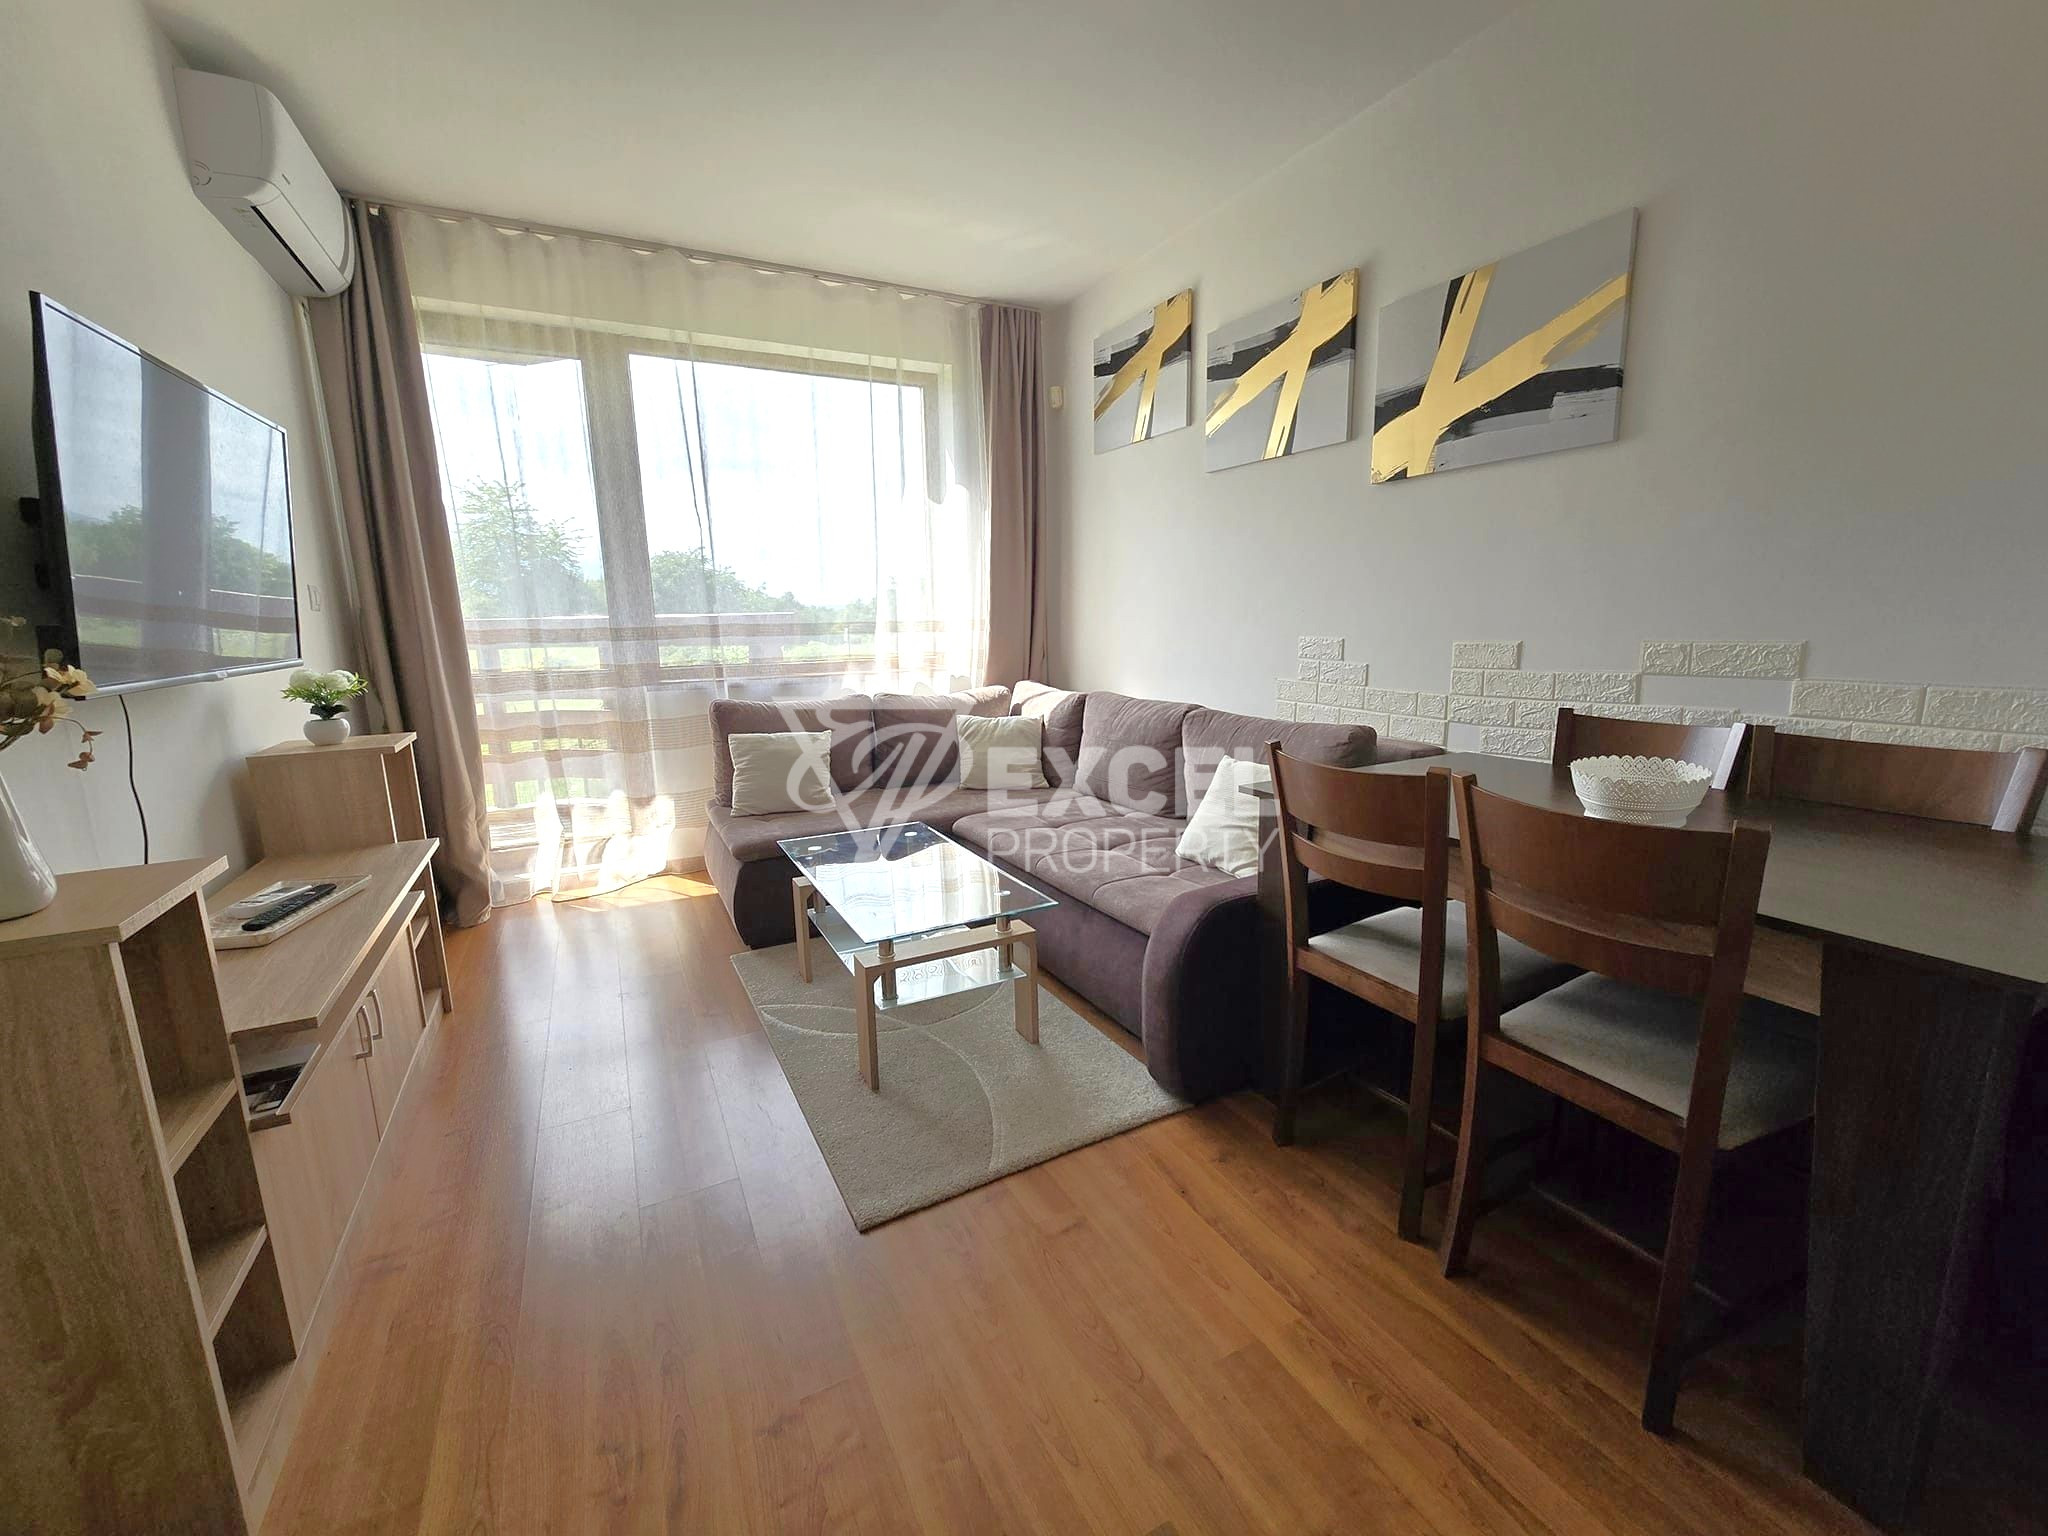 Продается меблированная двухкомнатная квартира в комплексе Belvedere Holiday Club, Банско